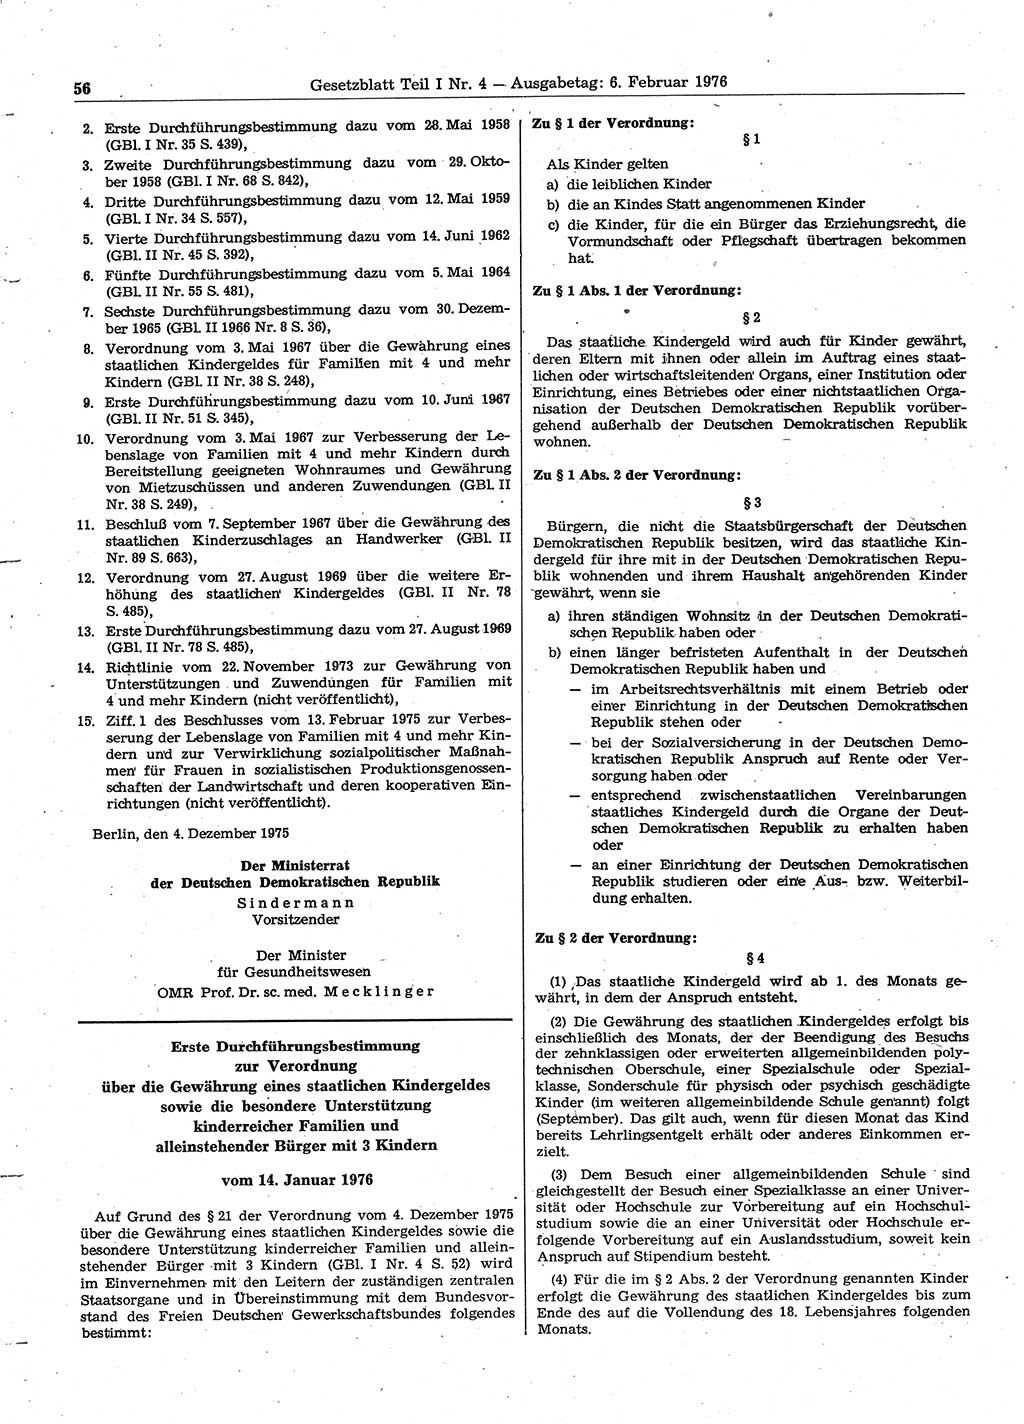 Gesetzblatt (GBl.) der Deutschen Demokratischen Republik (DDR) Teil Ⅰ 1976, Seite 56 (GBl. DDR Ⅰ 1976, S. 56)